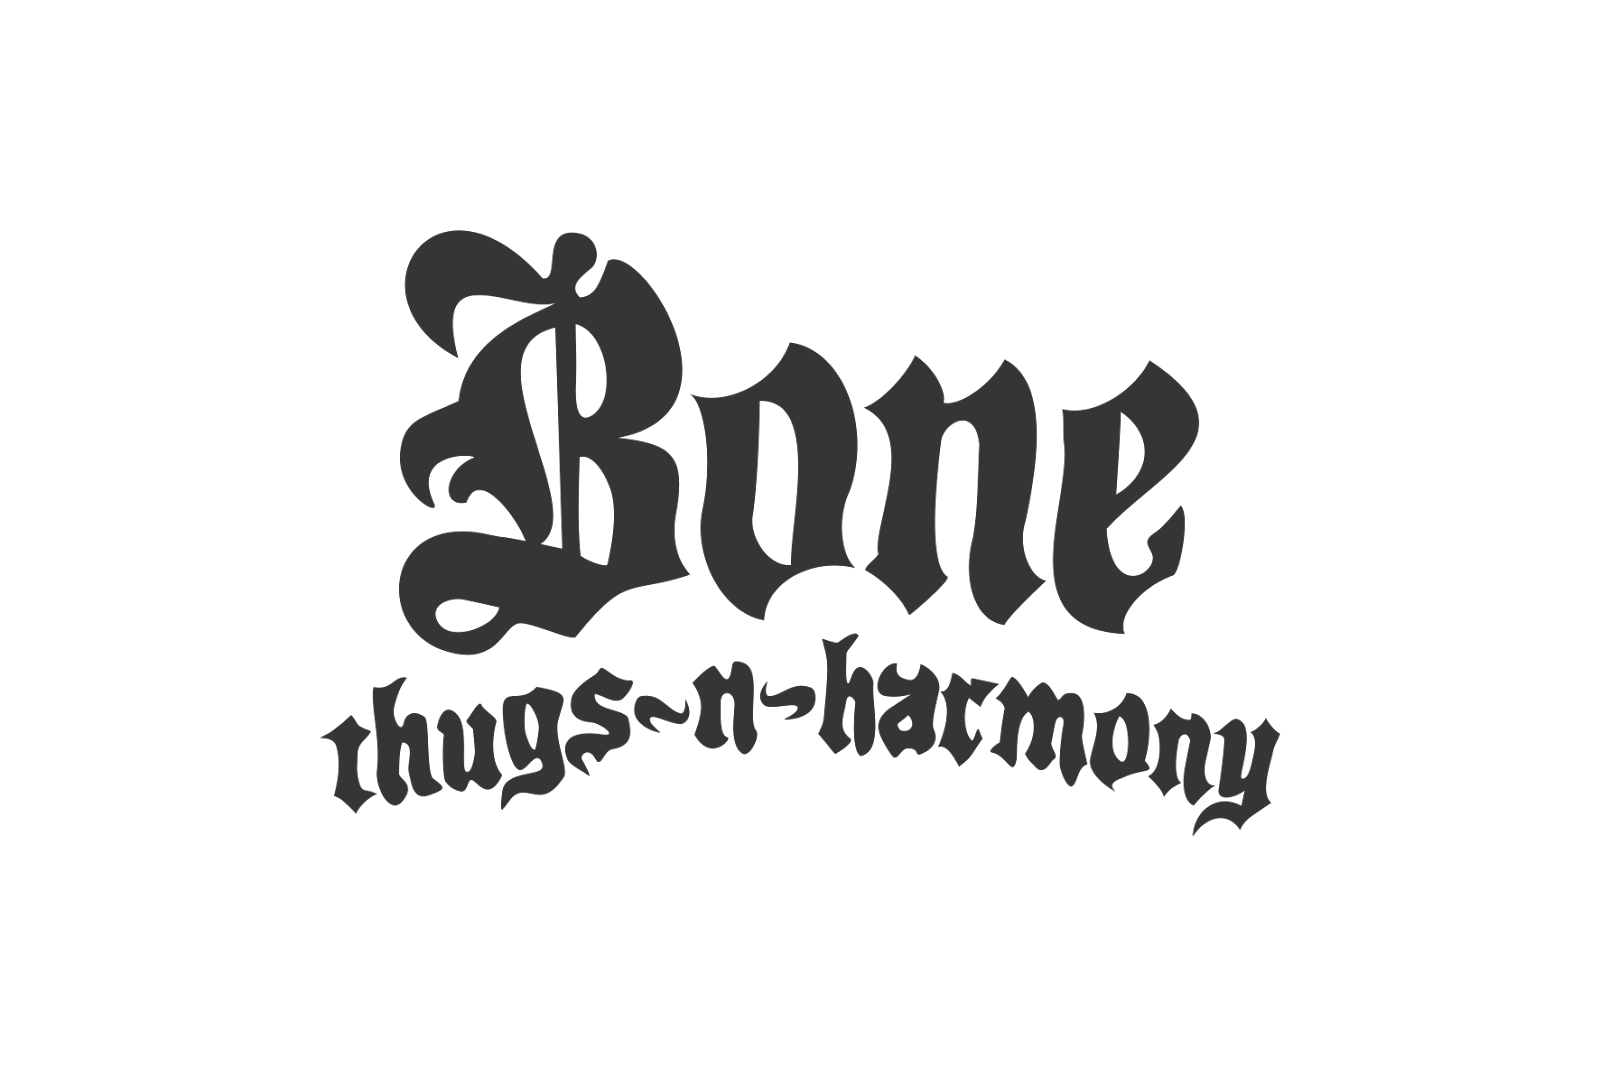 Bones n harmony. Bone Thugs-n-Harmony. Bone Thugs n Harmony logo. Bone Thugs -n - Harmony Rapper. Bones лого.